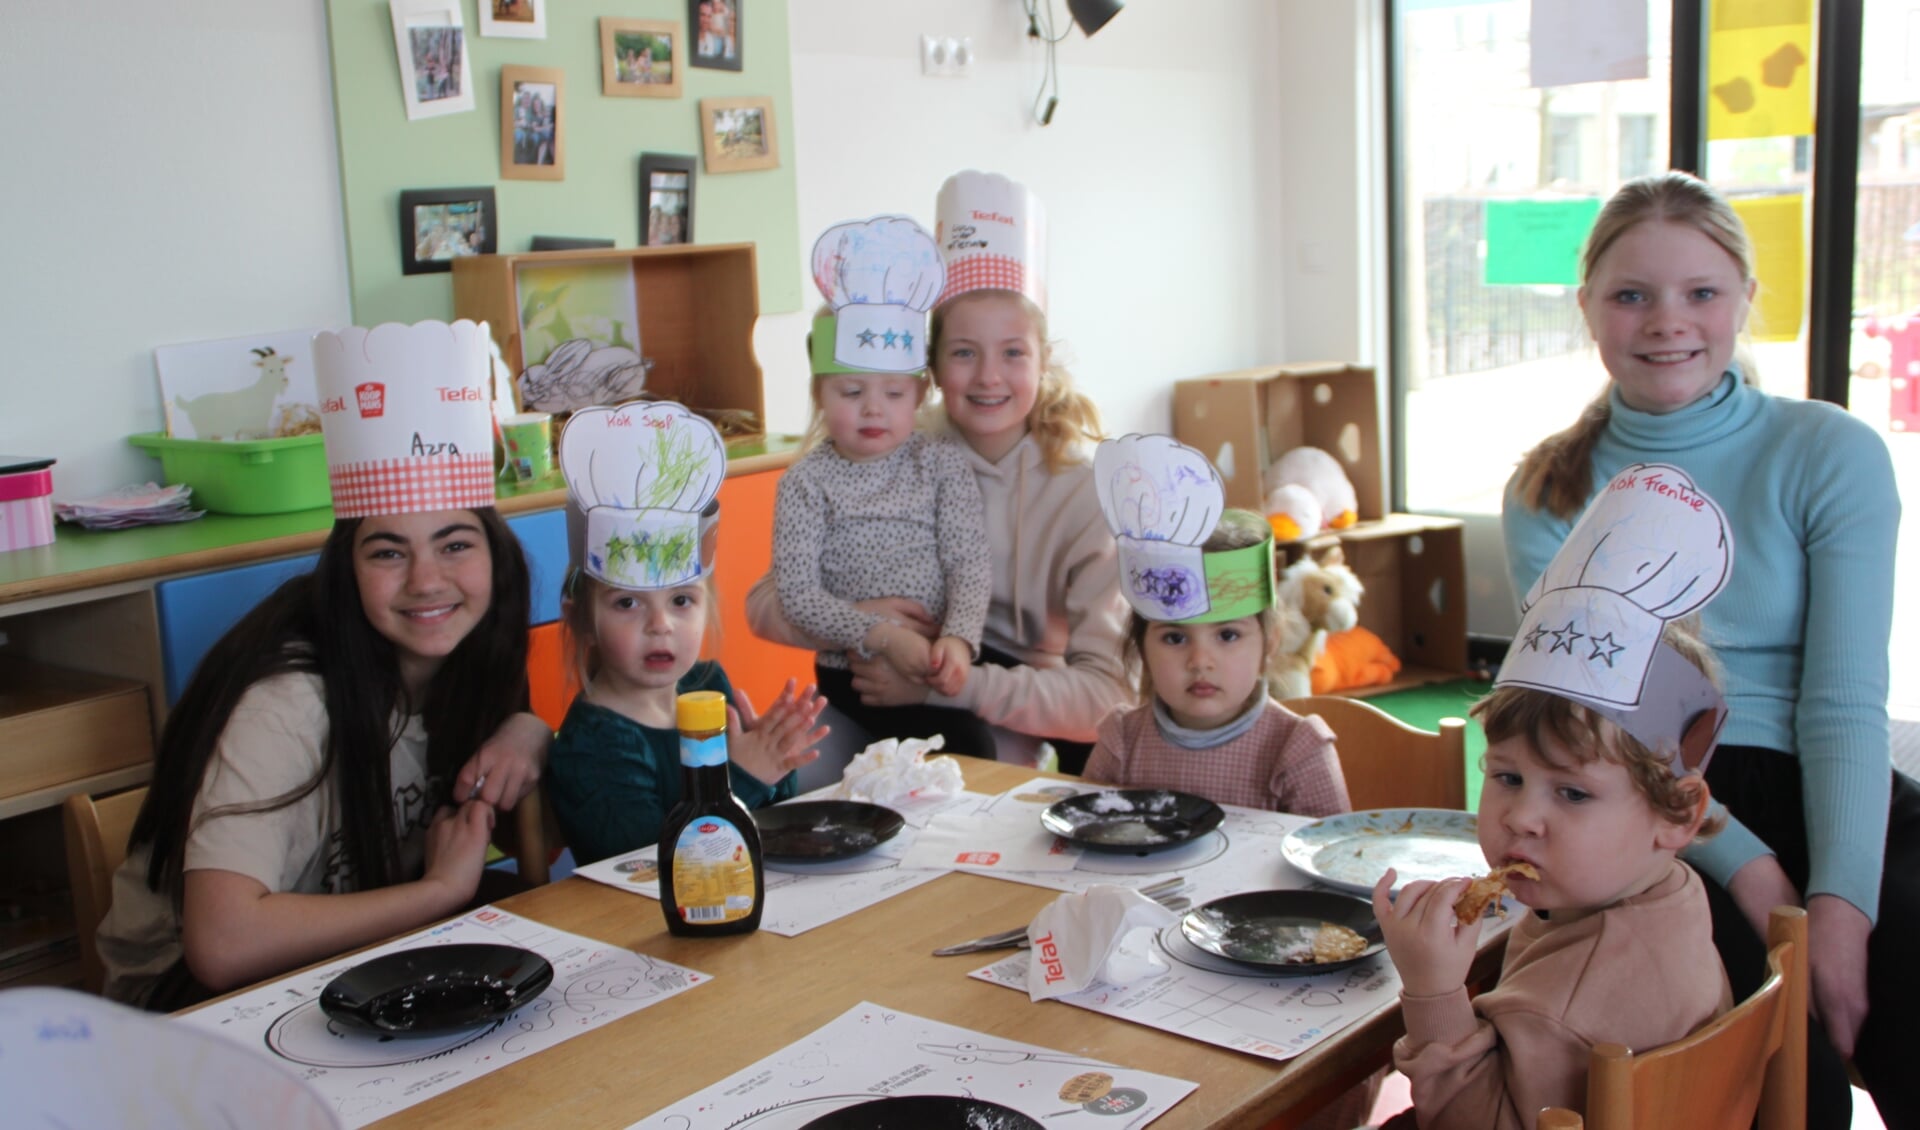 Leerlingen van de St. Jorisschool eten pannenkoeken met peuters van kinderdagverblijf De Banjers. Foto: Dinès Quist 